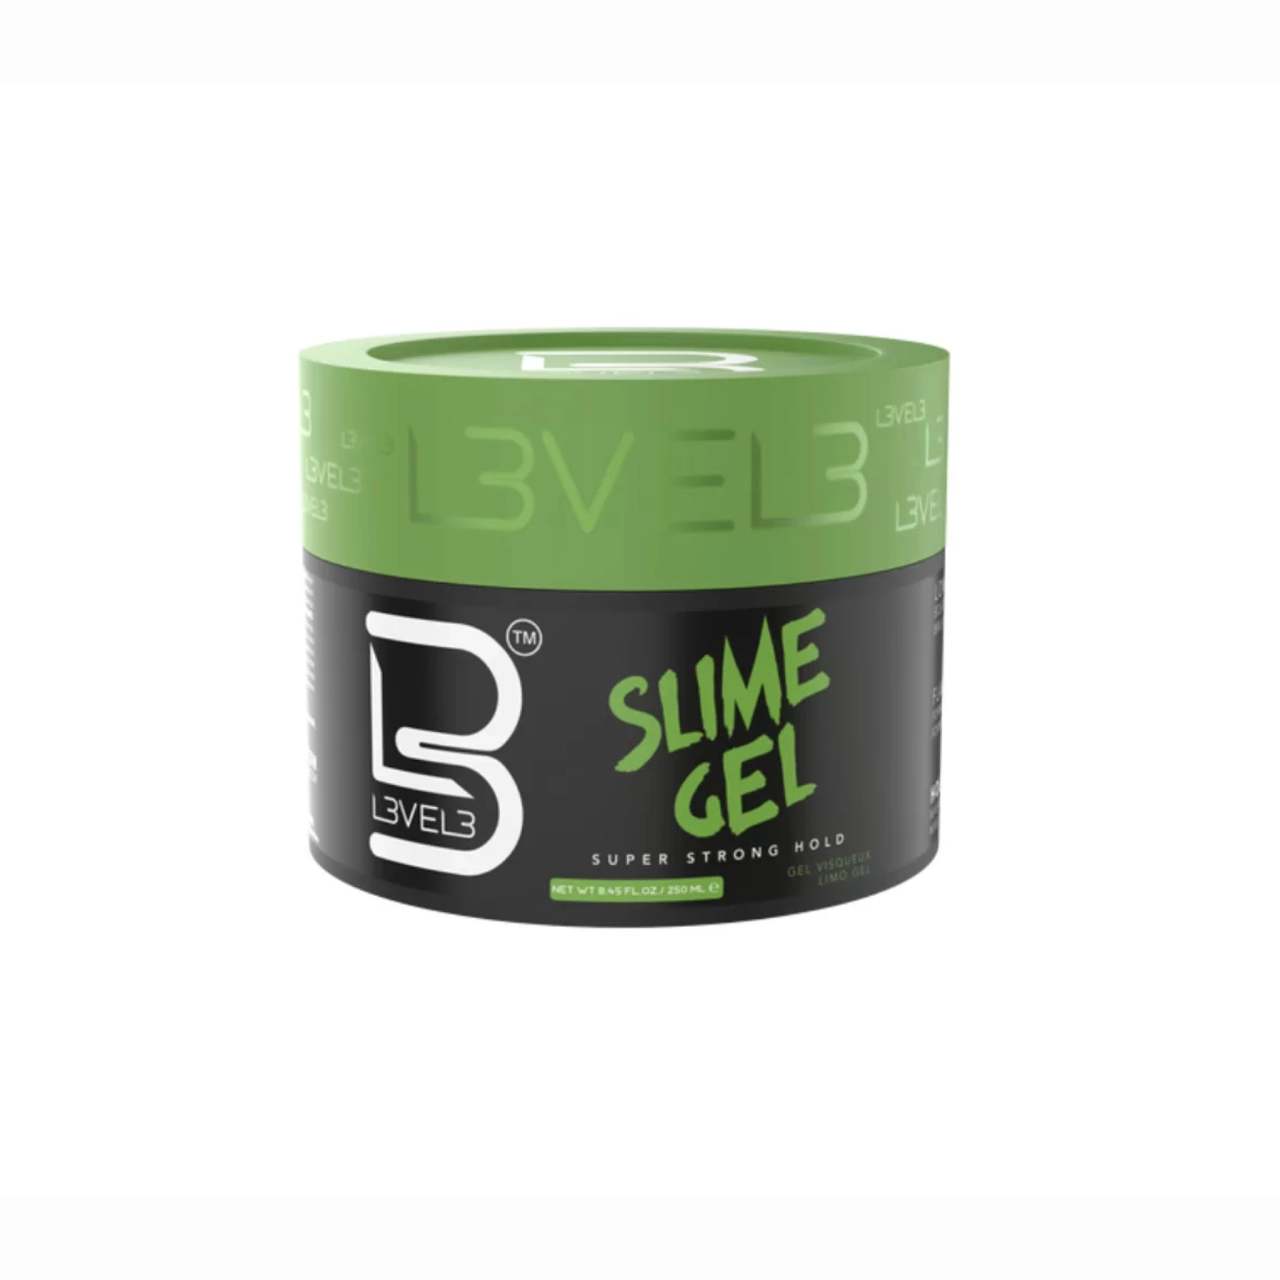 L3VEL3 Slime Gel - gél na vlasy, 250 ml